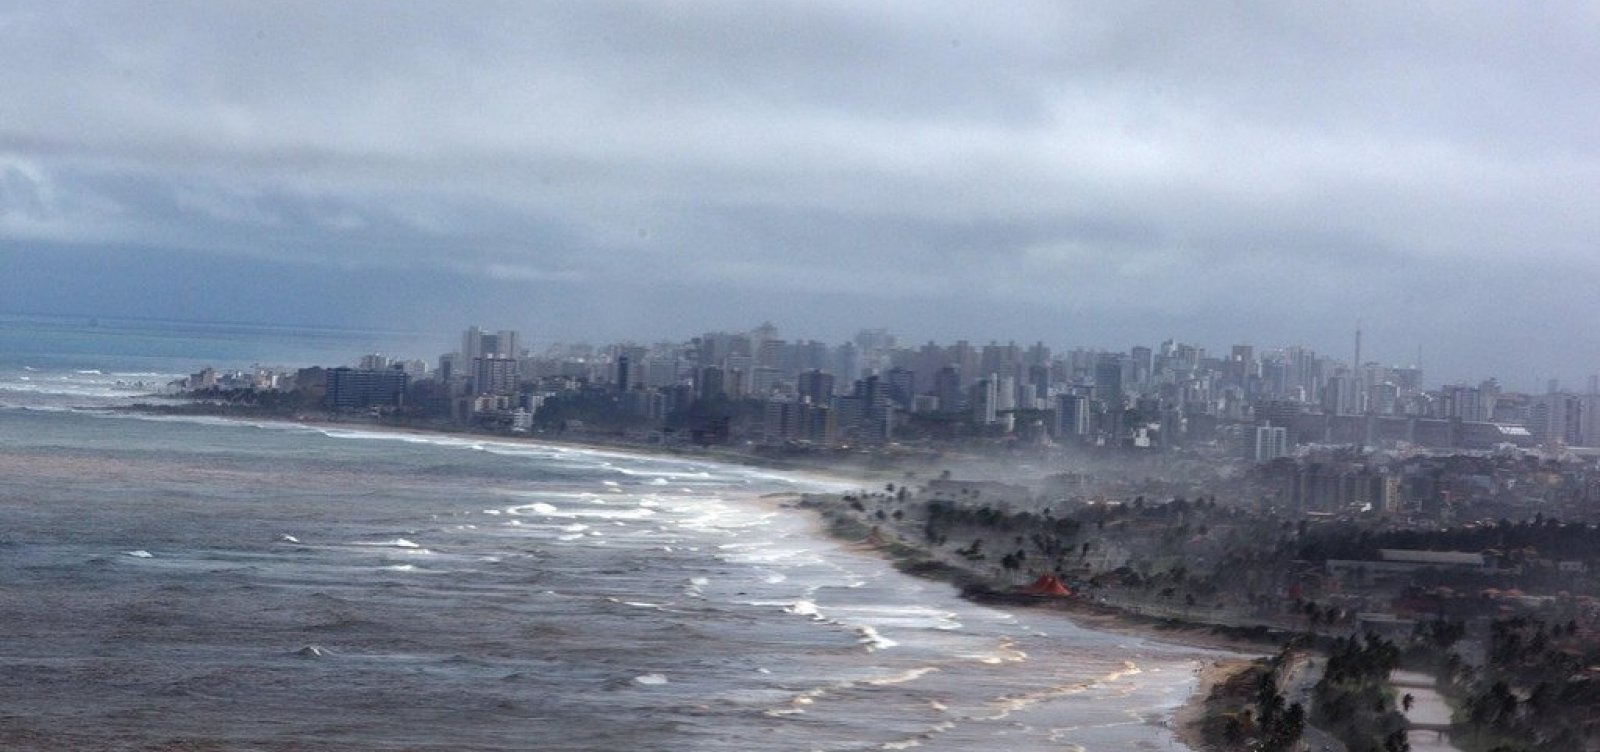 Marinha emite alerta com previsão de ondas de até 2,5 metros no litoral da Bahia